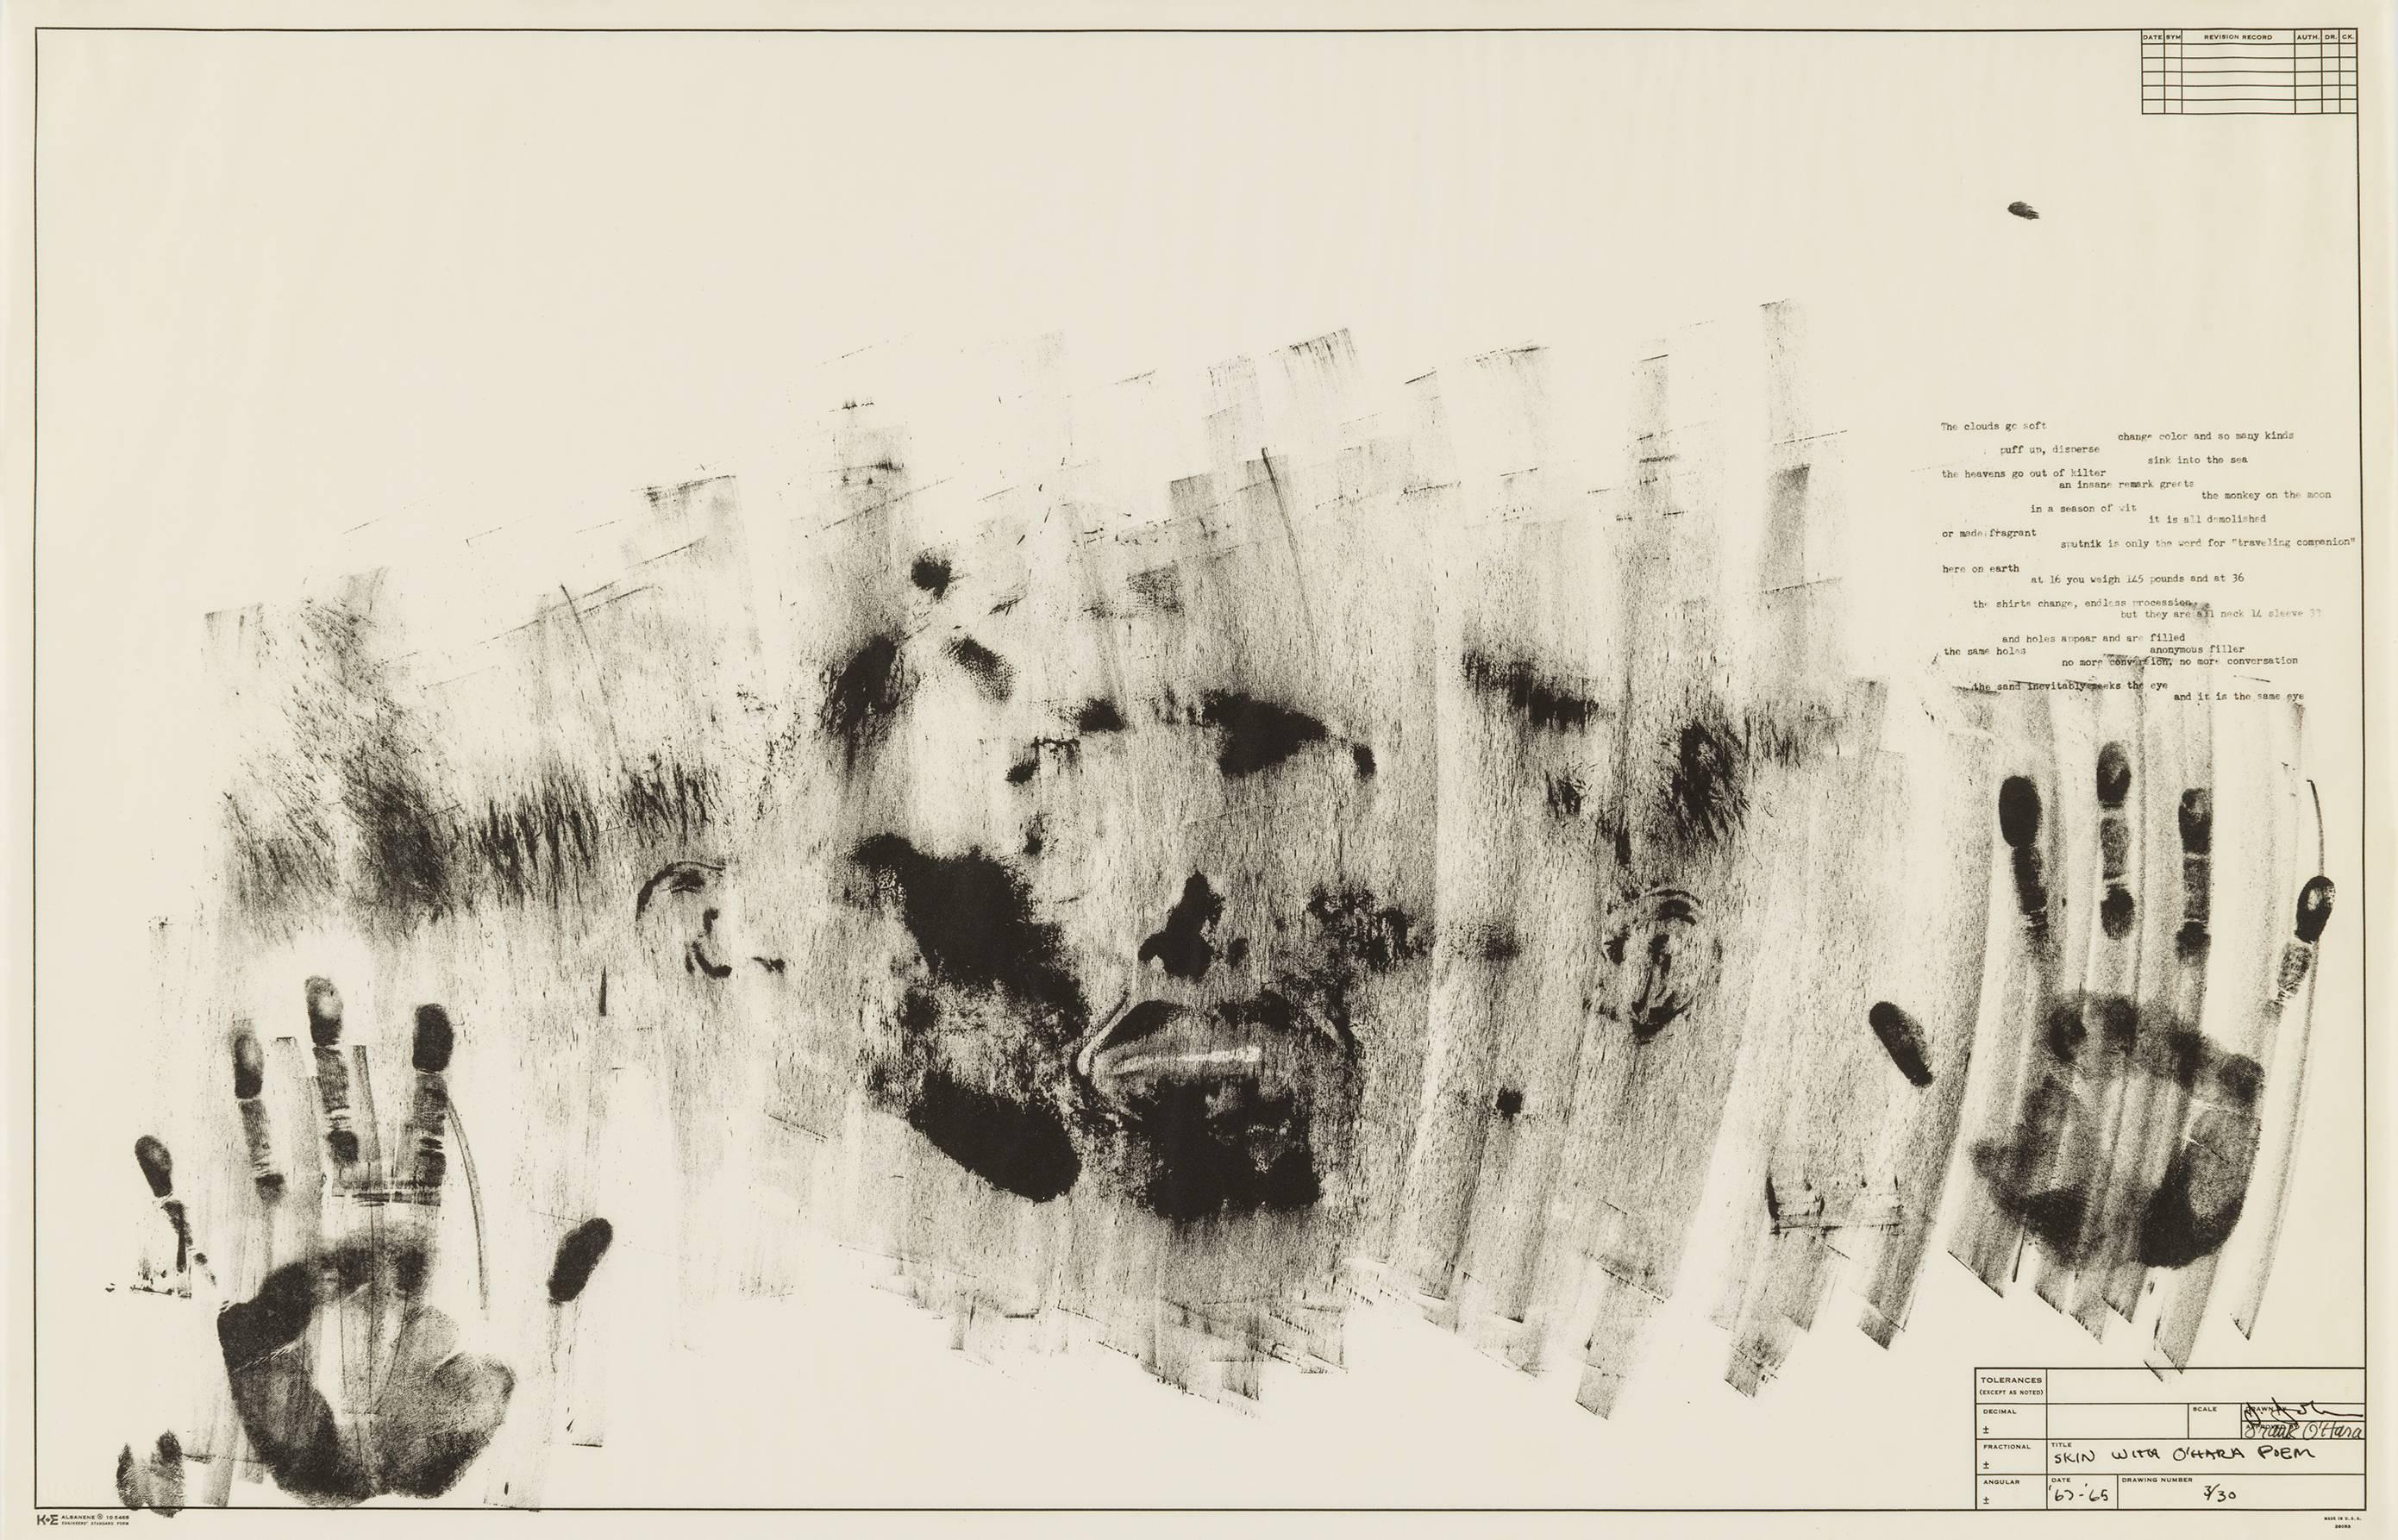 Jasper Johns Abstract Print - Skin with O'Hara Poem